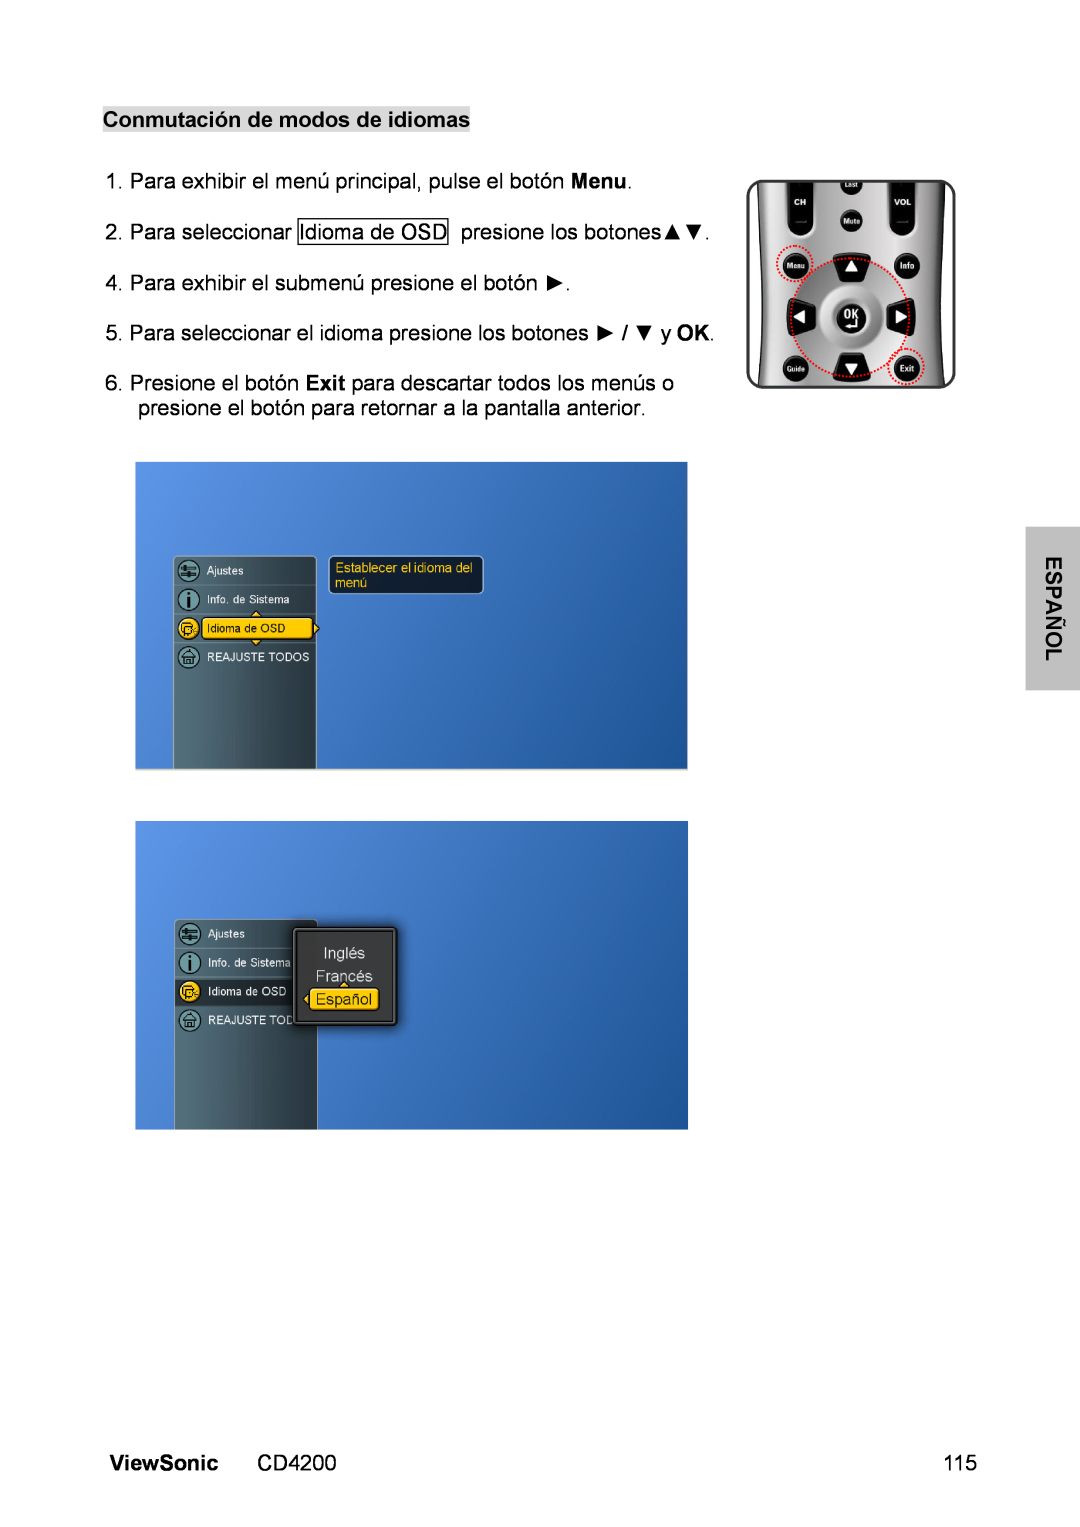 ViewSonic CD4200 manual Conmutación de modos de idiomas, Para exhibir el menú principal, pulse el botón Menu, Español 